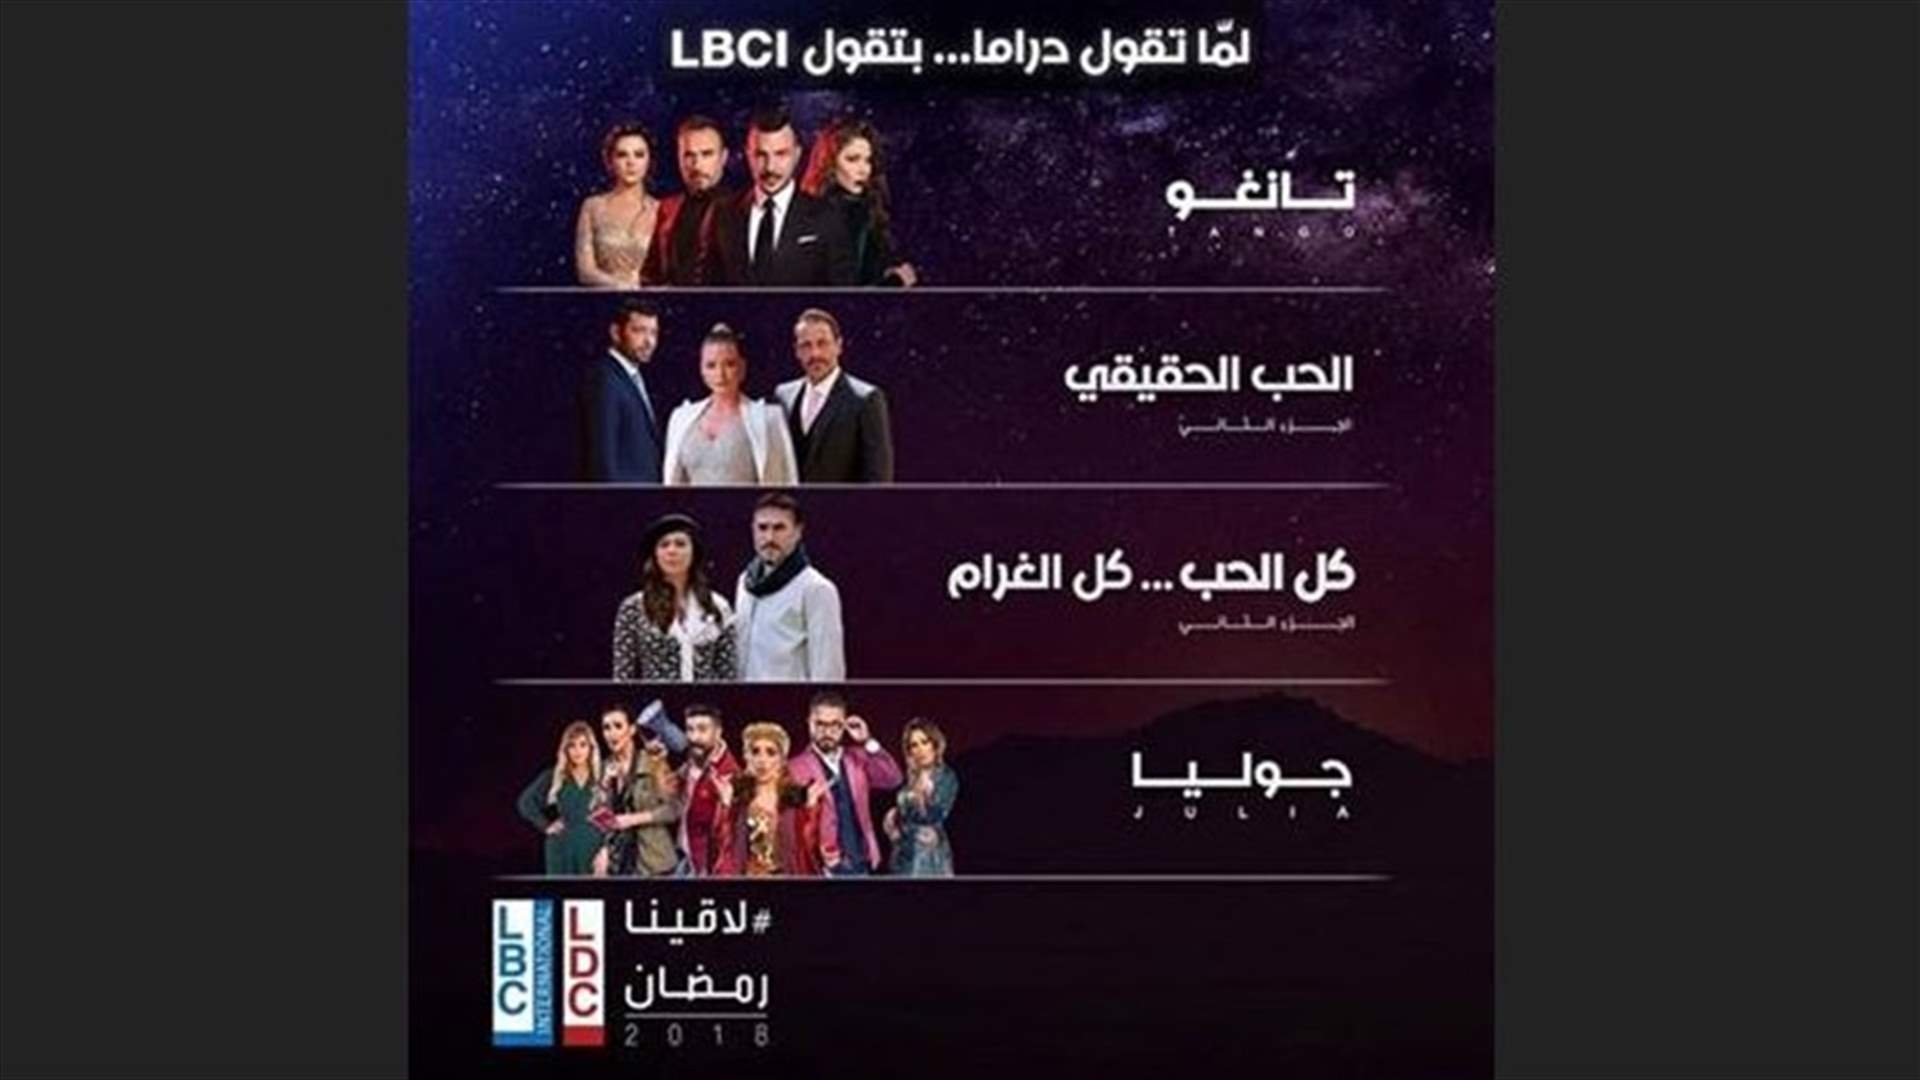 بالأرقام: المسلسلات التي تصدّرت السباق الرمضاني في لبنان طيلة الشهر الفضيل